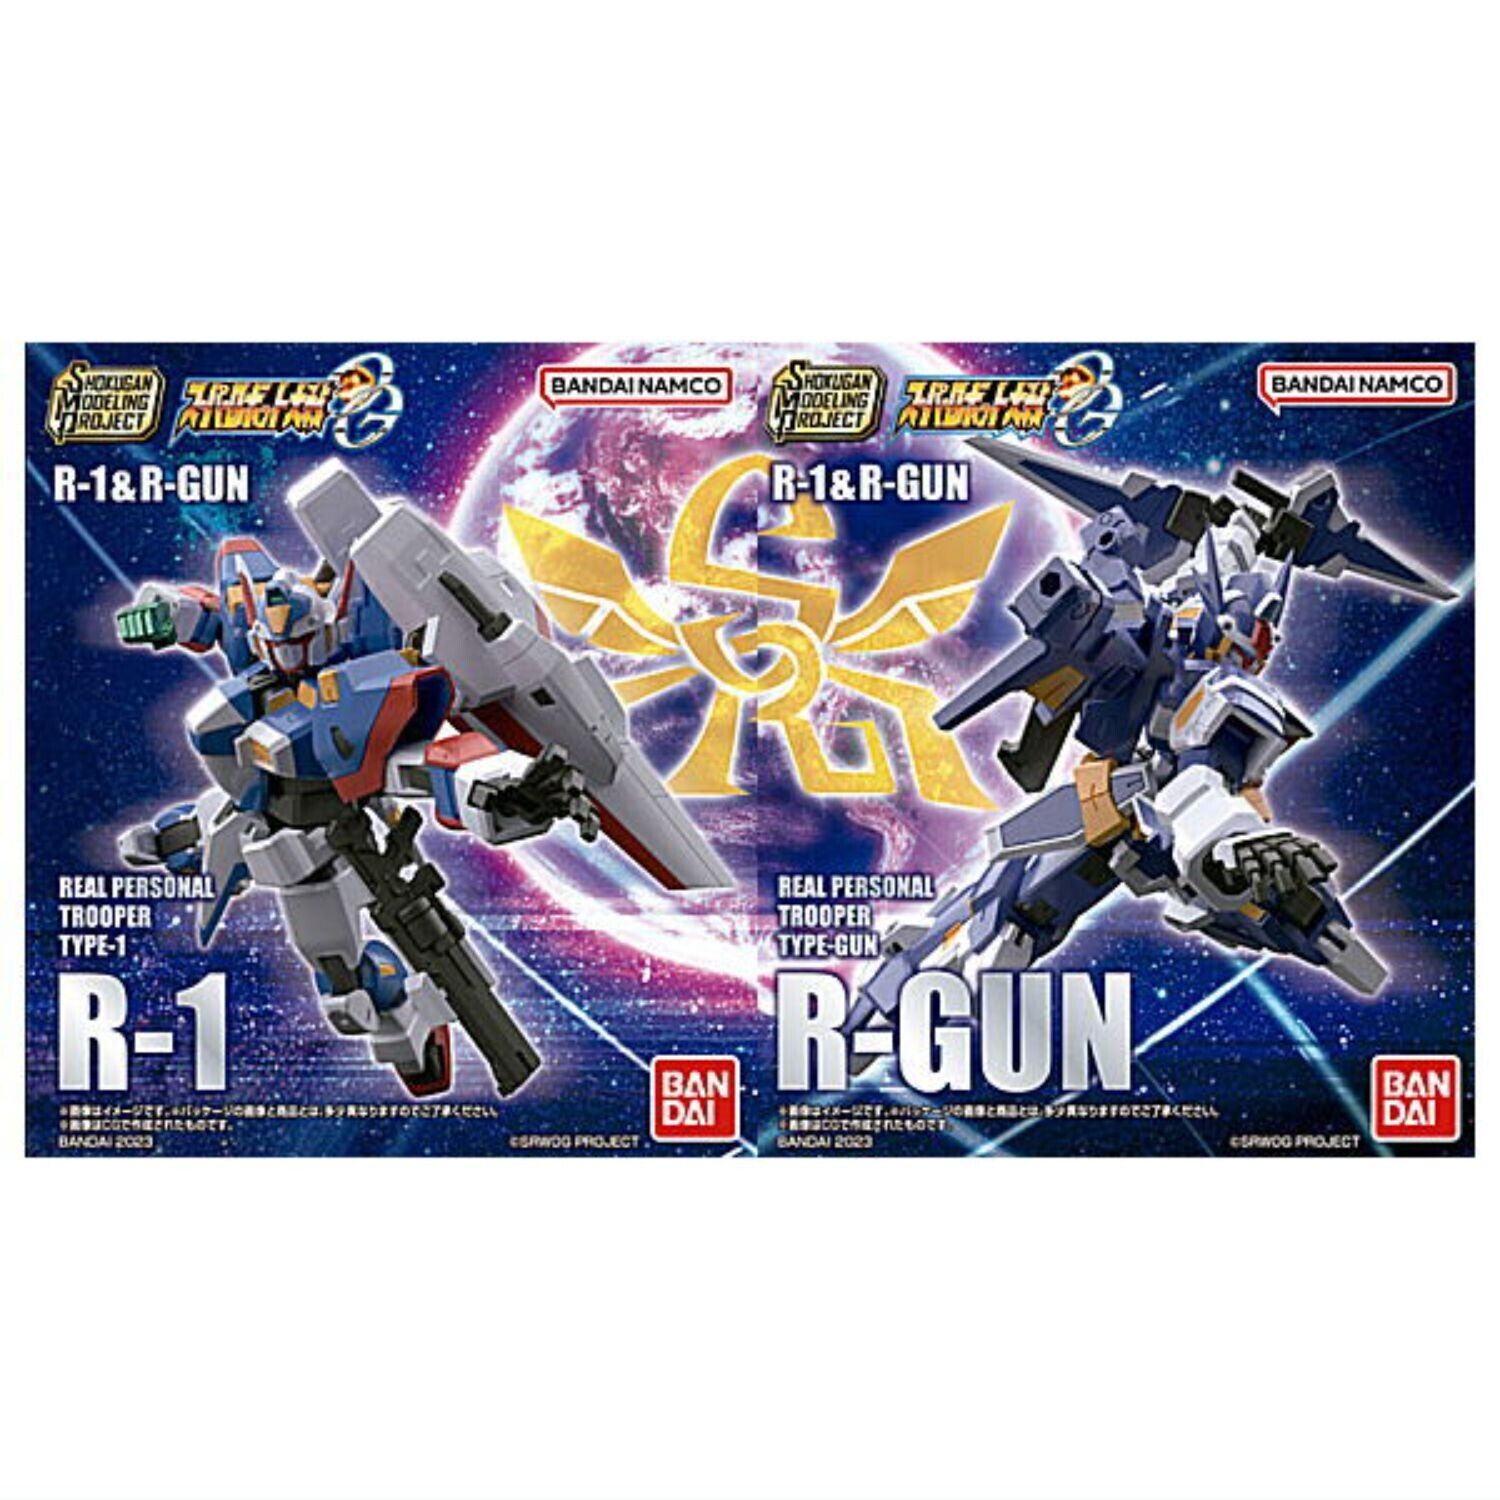 SMP [SHOKUGAN MODELING PROJECT] Super Robot Wars OG R-1&R-GUN Collection Toy